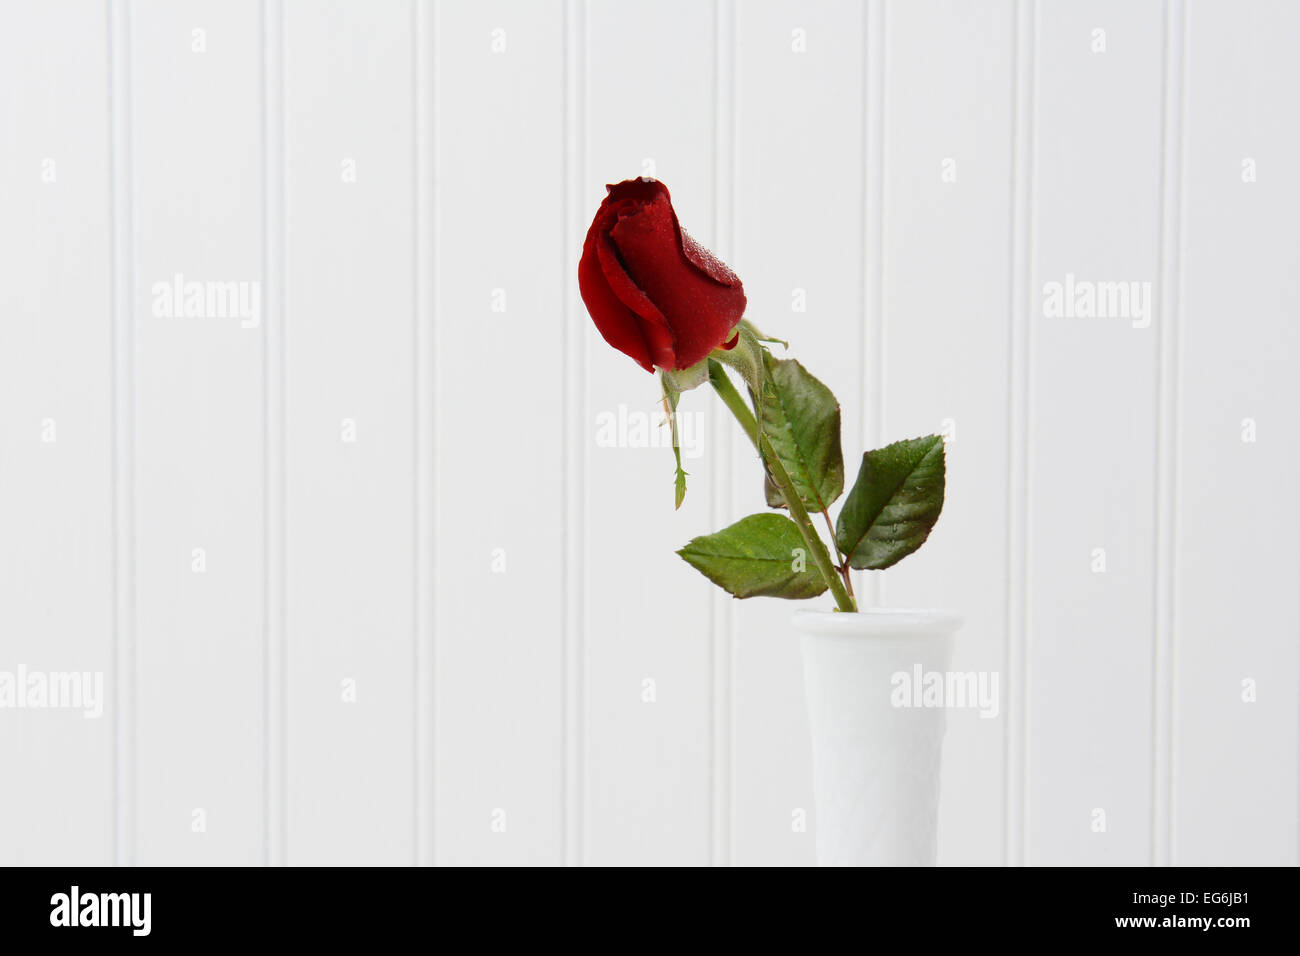 Libre d'une rose rouge bur avec gouttelettes d'eau dans un vase blanc contre un fond blanc beadboard. Format horizontal Banque D'Images